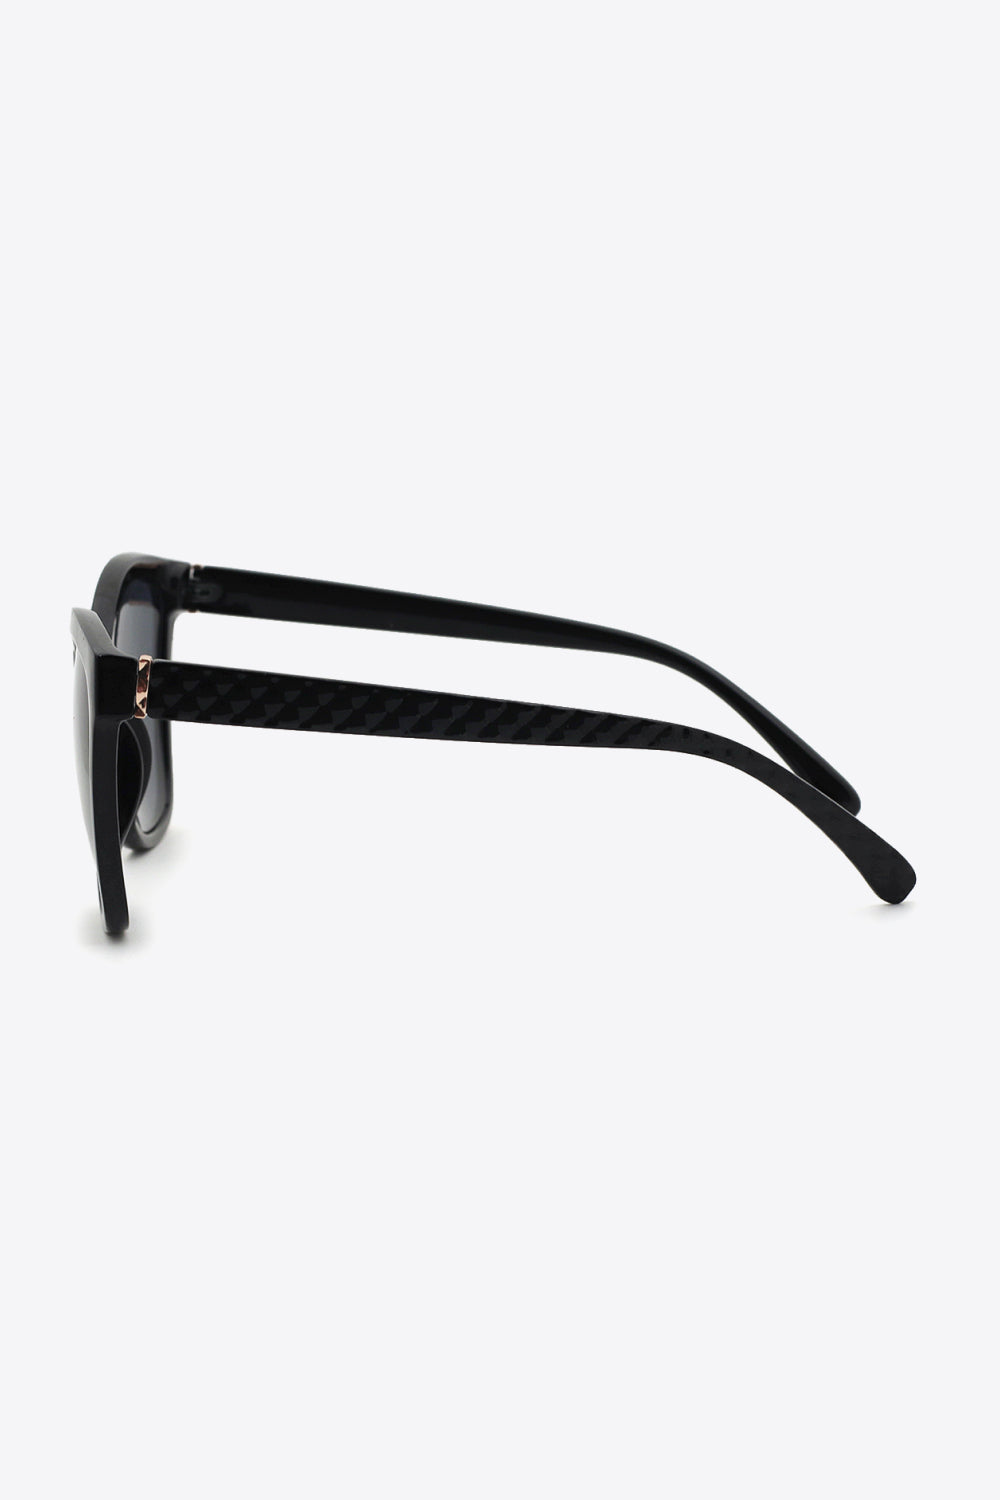 Full Rim Polycarbonate Sunglasses - AllIn Computer